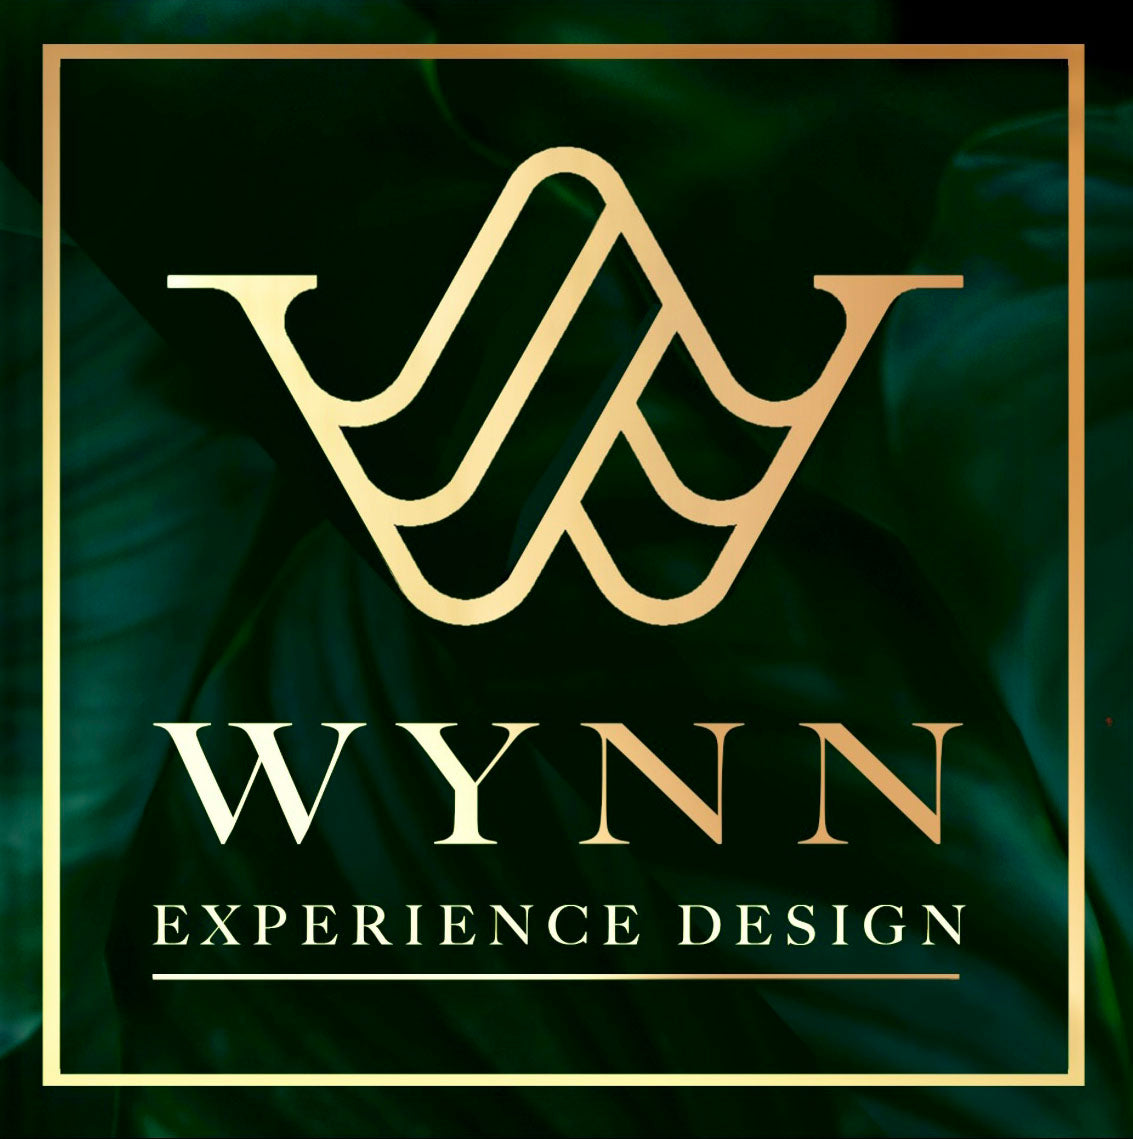 WYNN experience design logo